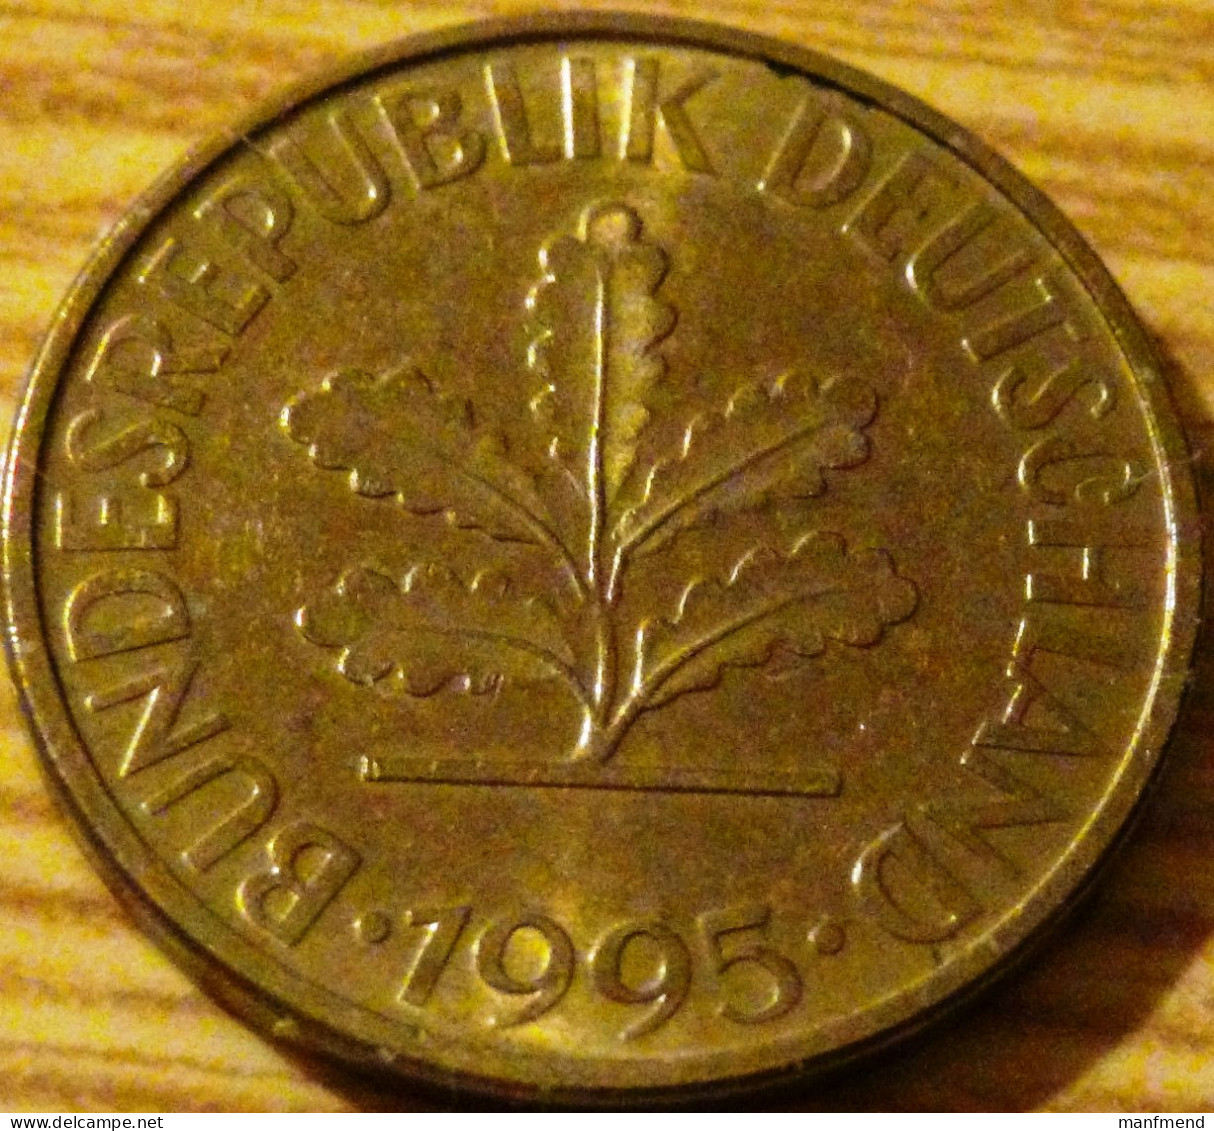 Germany - KM 108 - 1995- 10 Pfennig - Mintmark "A" - Berlin - XF - Look Scans - 10 Pfennig